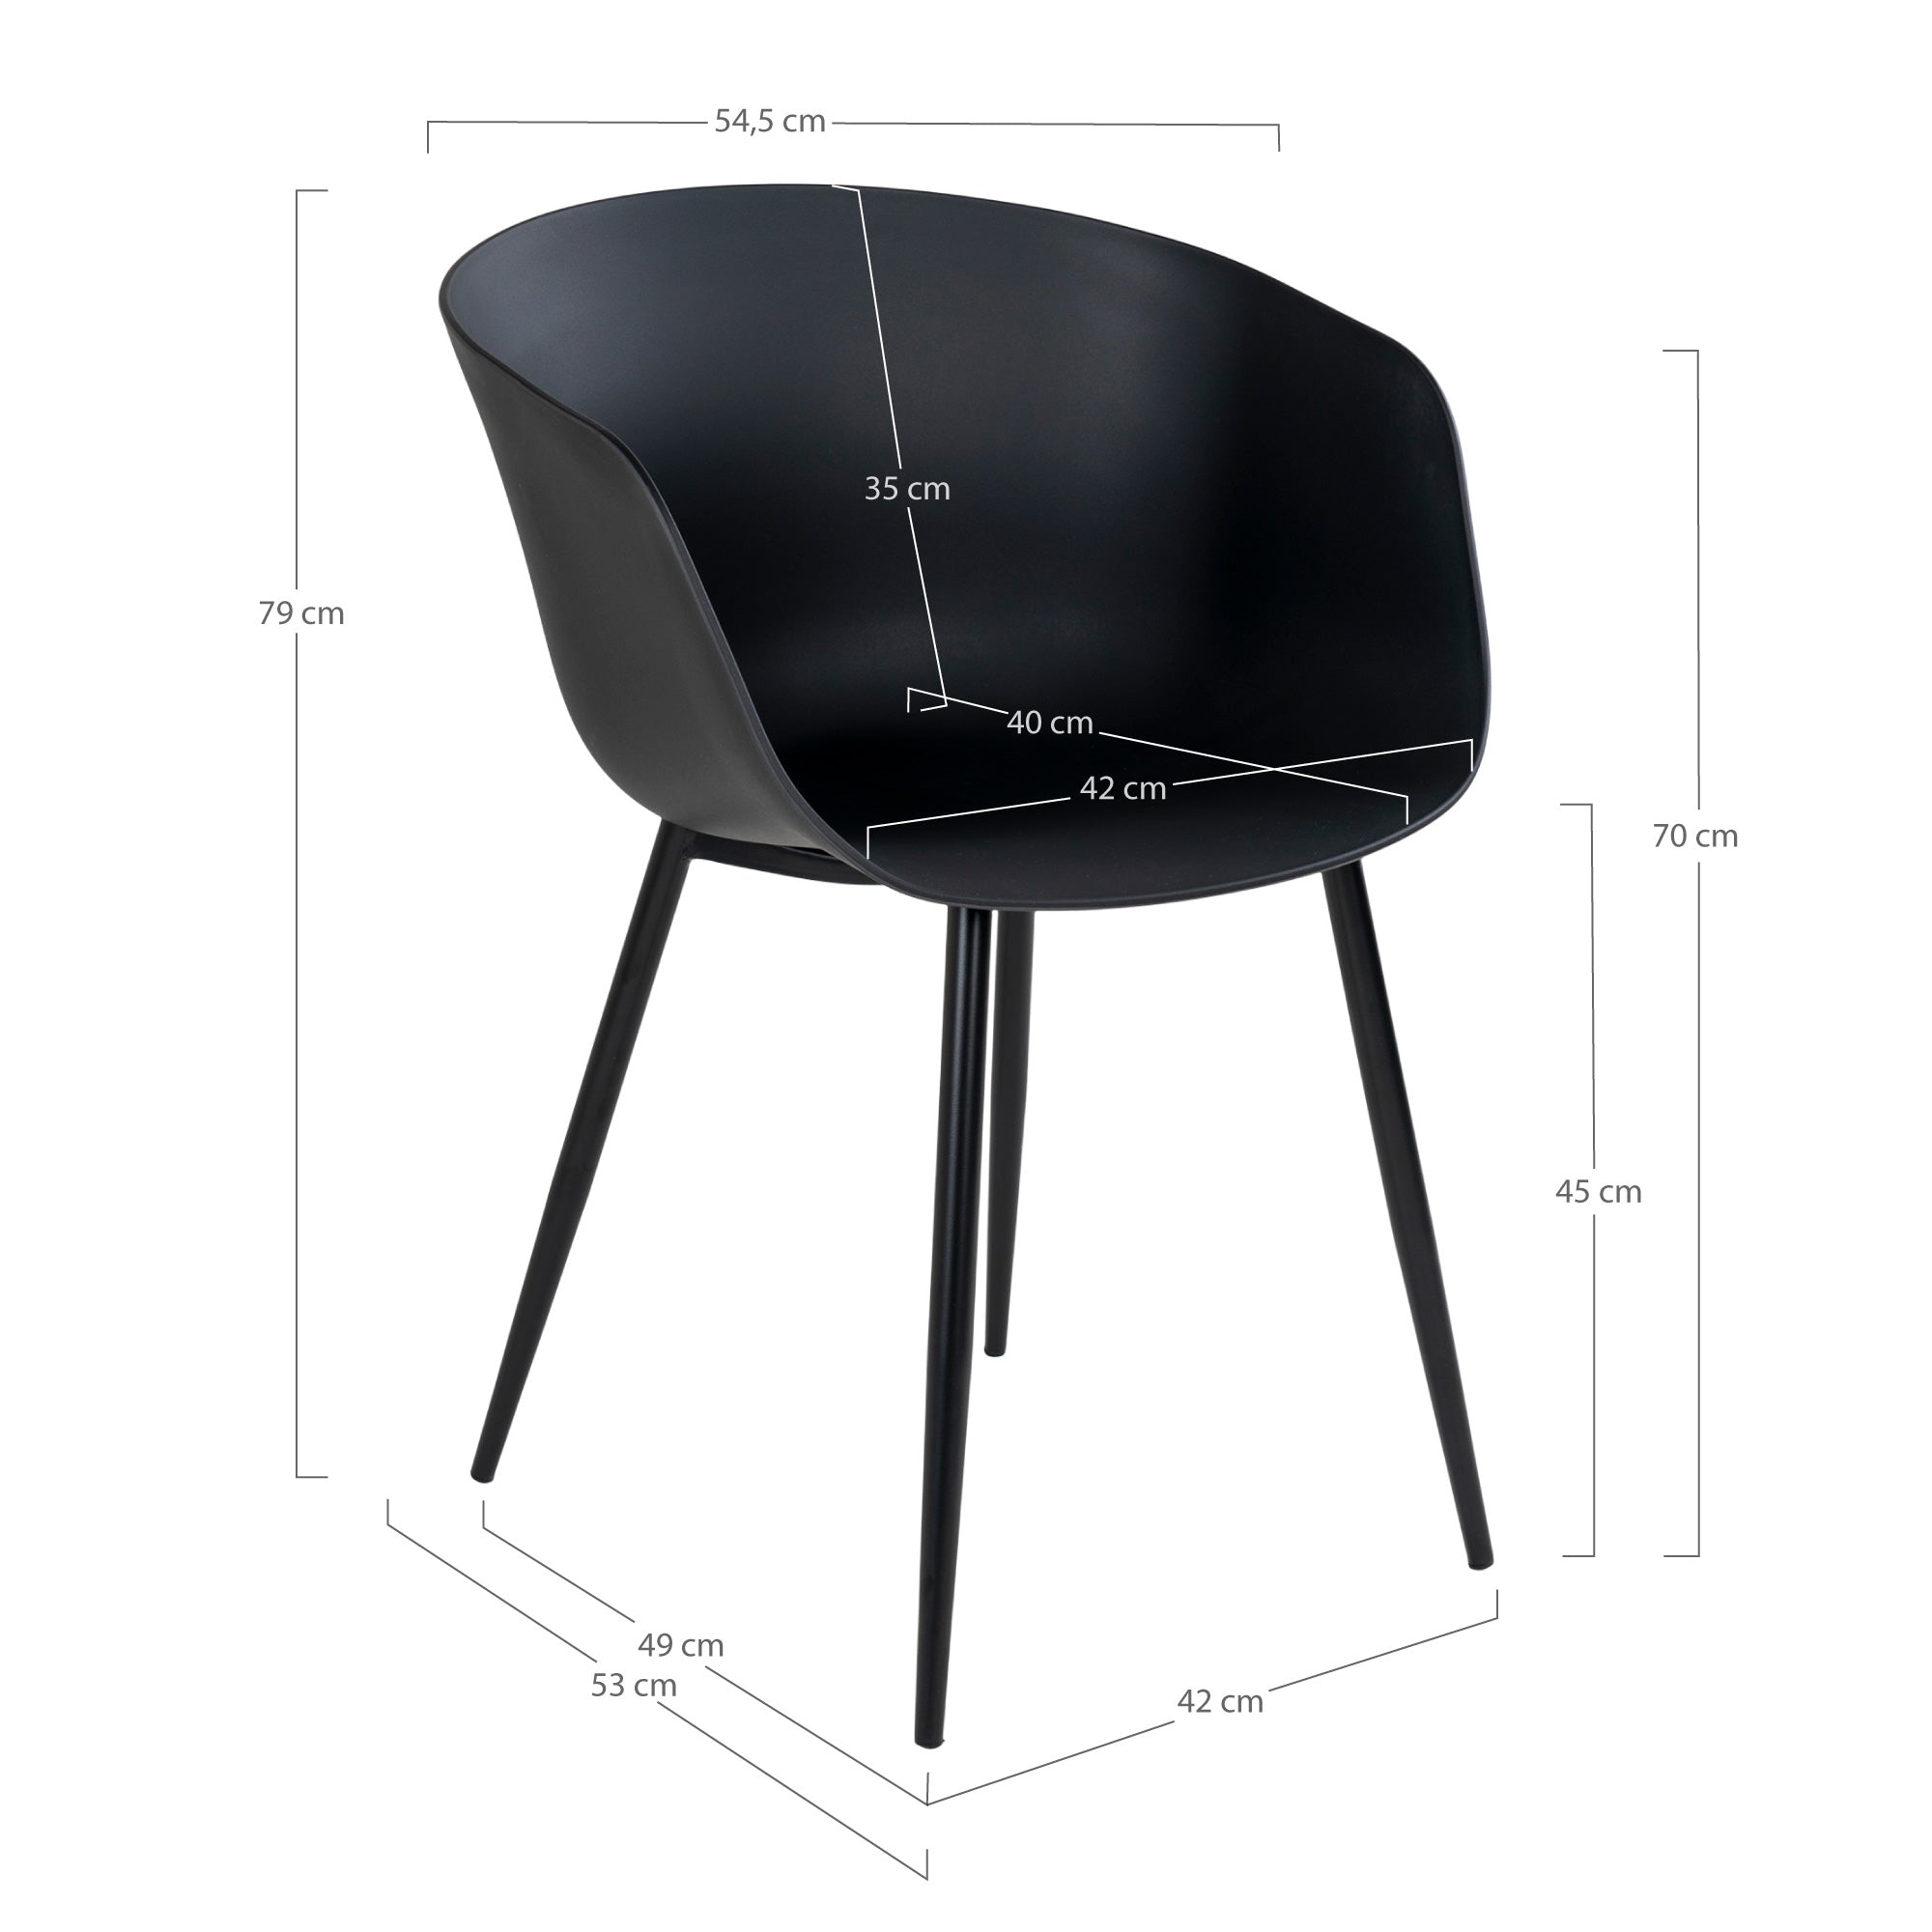 Roda Spisebordsstol - Spisebordsstol, Sort Med Sorte Ben ⎮ Sæt af 2 stk. ⎮ 5713917003914 ⎮ 7001125 